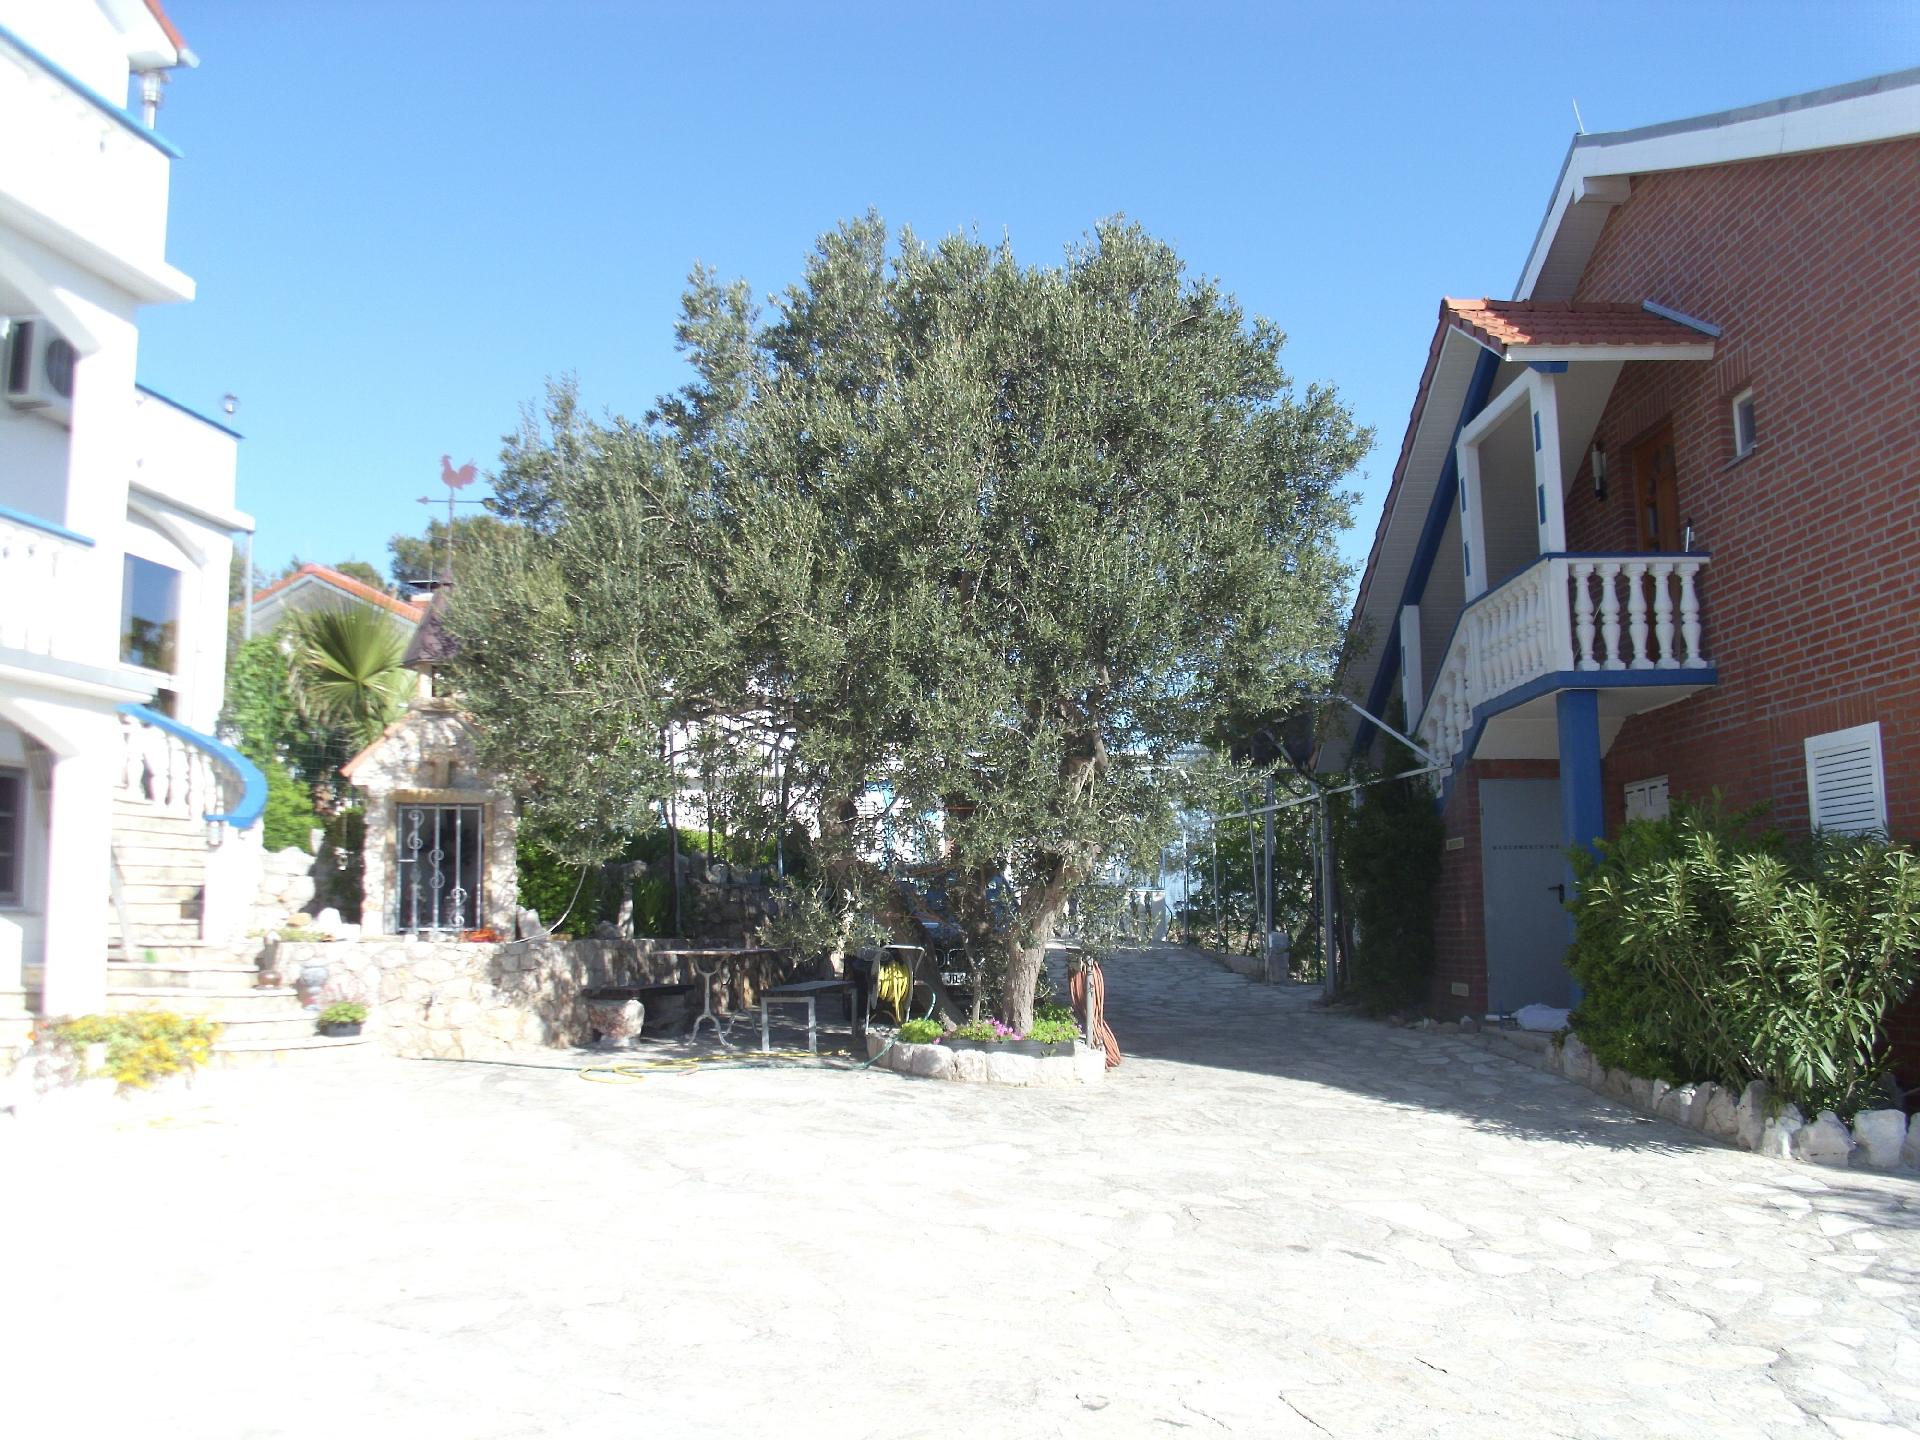 Ferienwohnung für vier Personen mit Terrasse  Ferienhaus  Insel Pasman